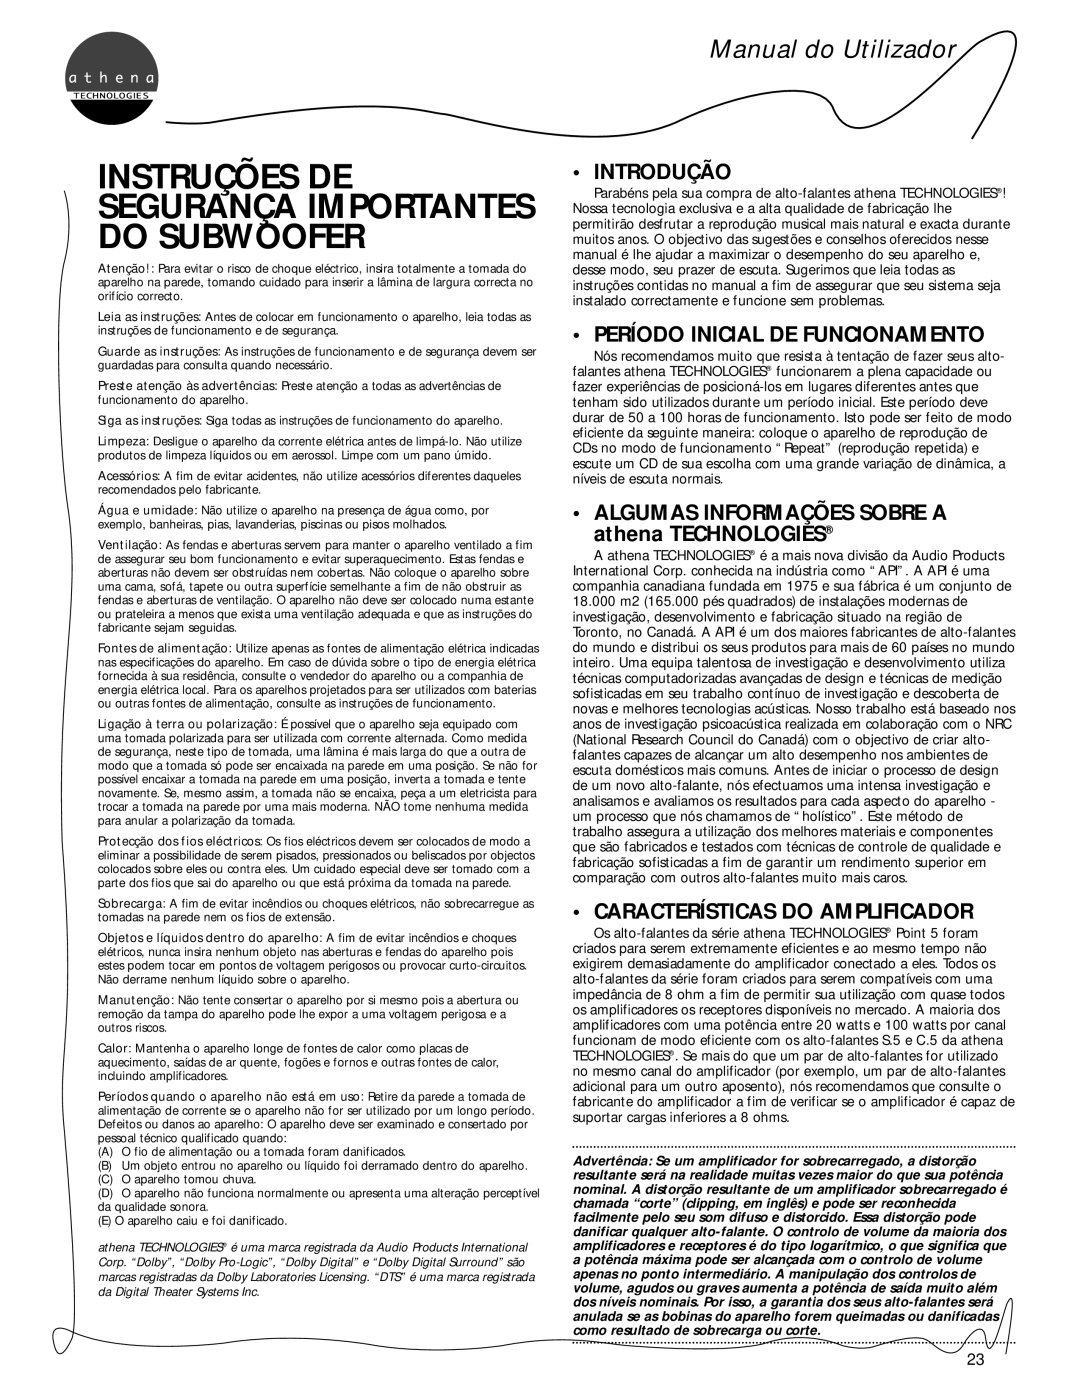 Athena Technologies C.5, S.5, P.5 Instruções De, Segurança Importantes Do Subwoofer, Manual do Utilizador, Introdução 